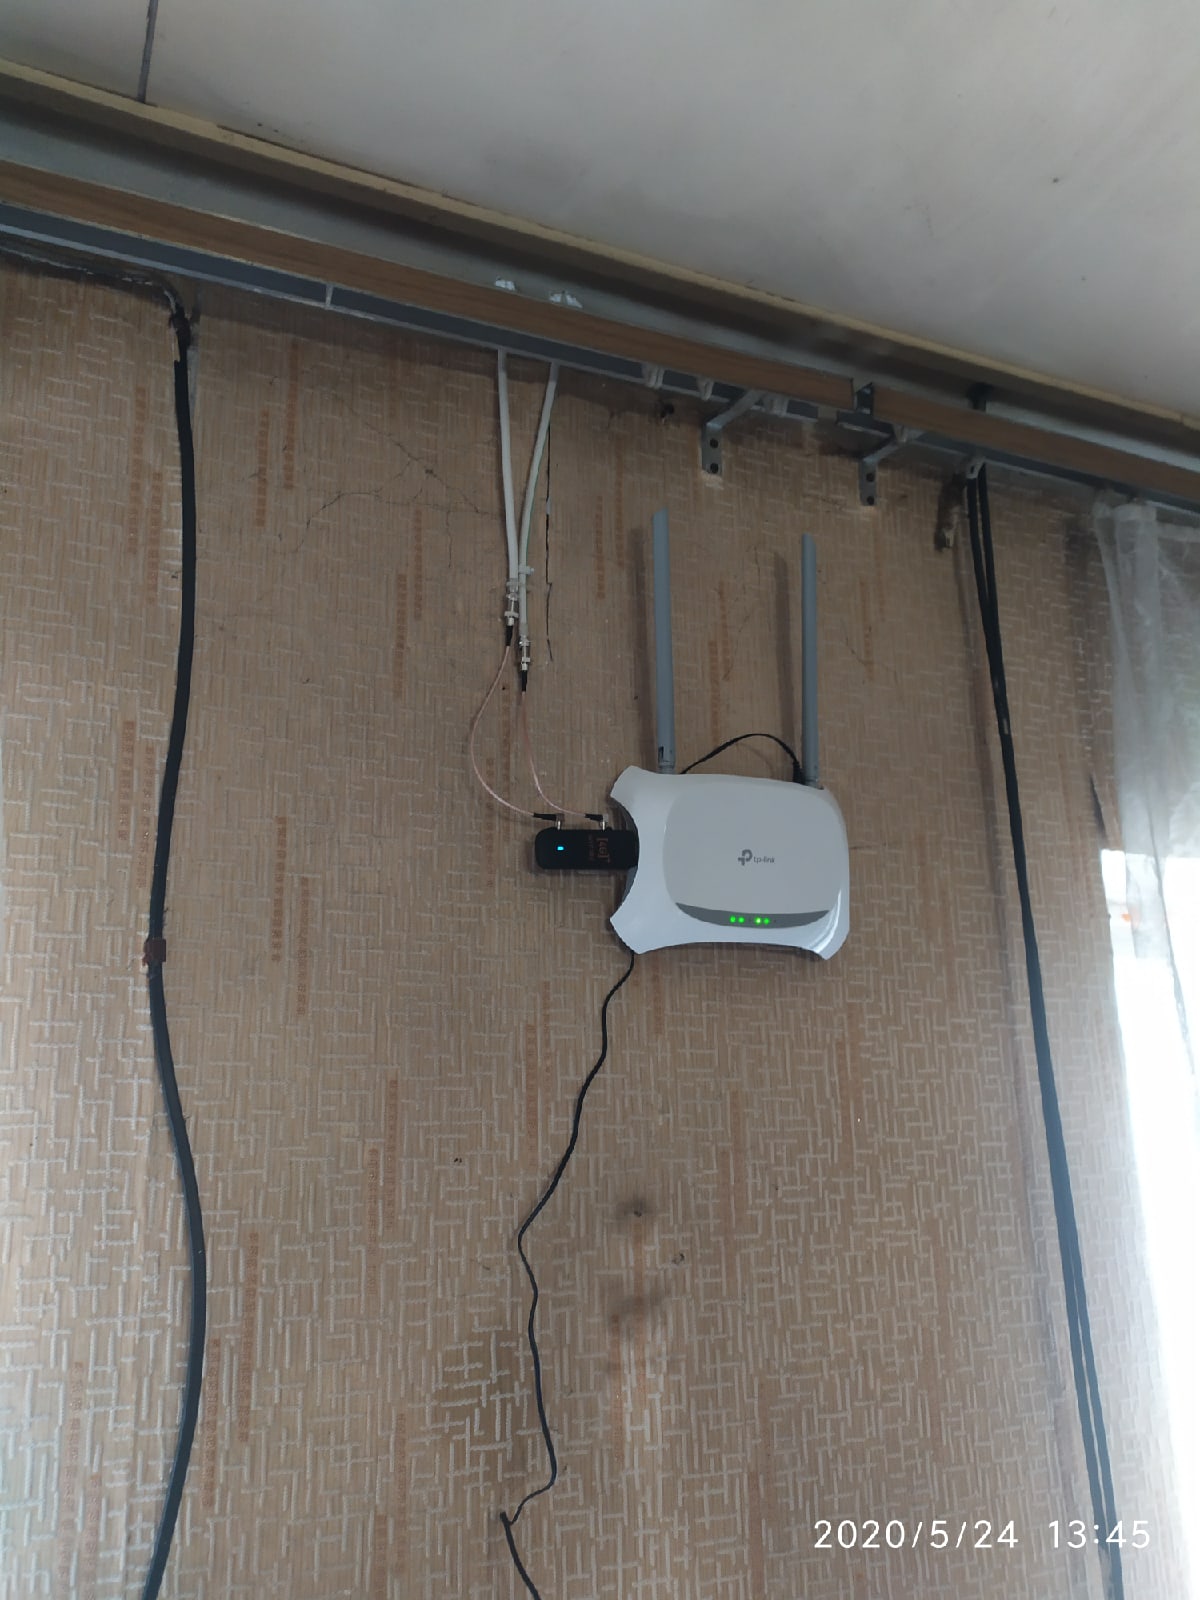 Безлимитный интернет в поселке Агеево, Тульская область, Суворовский район!